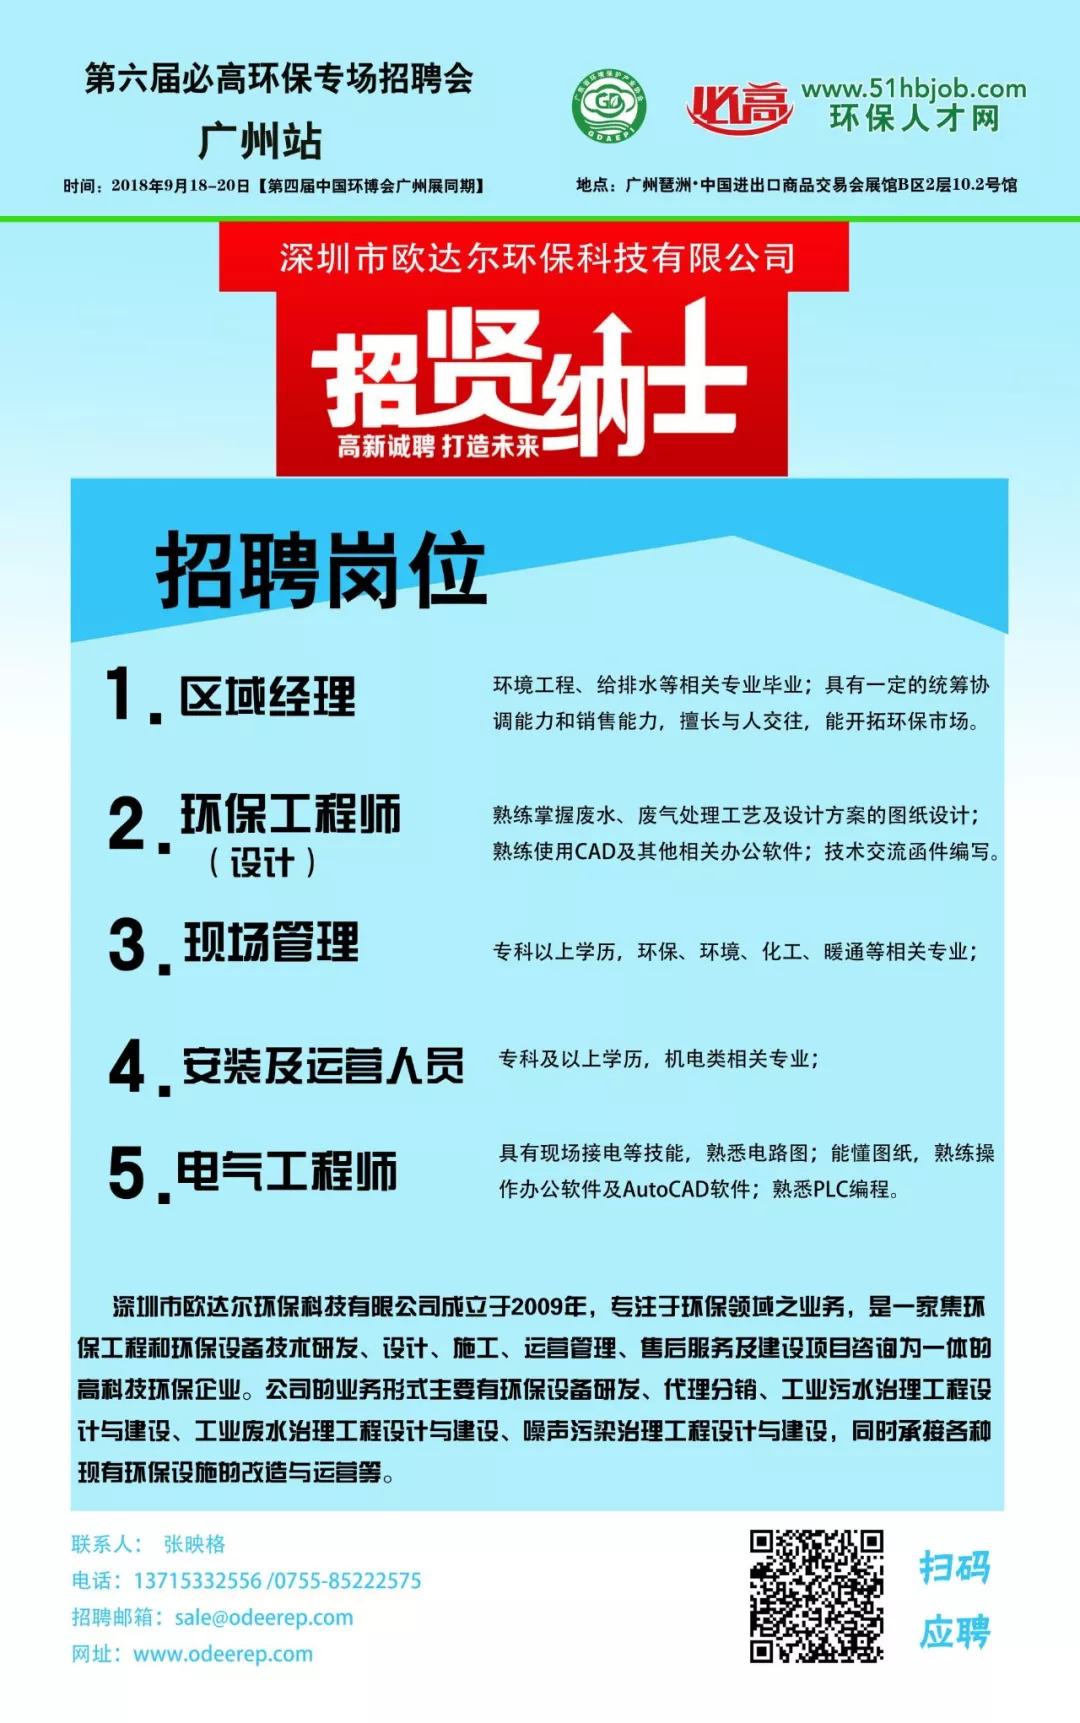 广州站环保招聘会海报和名单提前看,约您和万